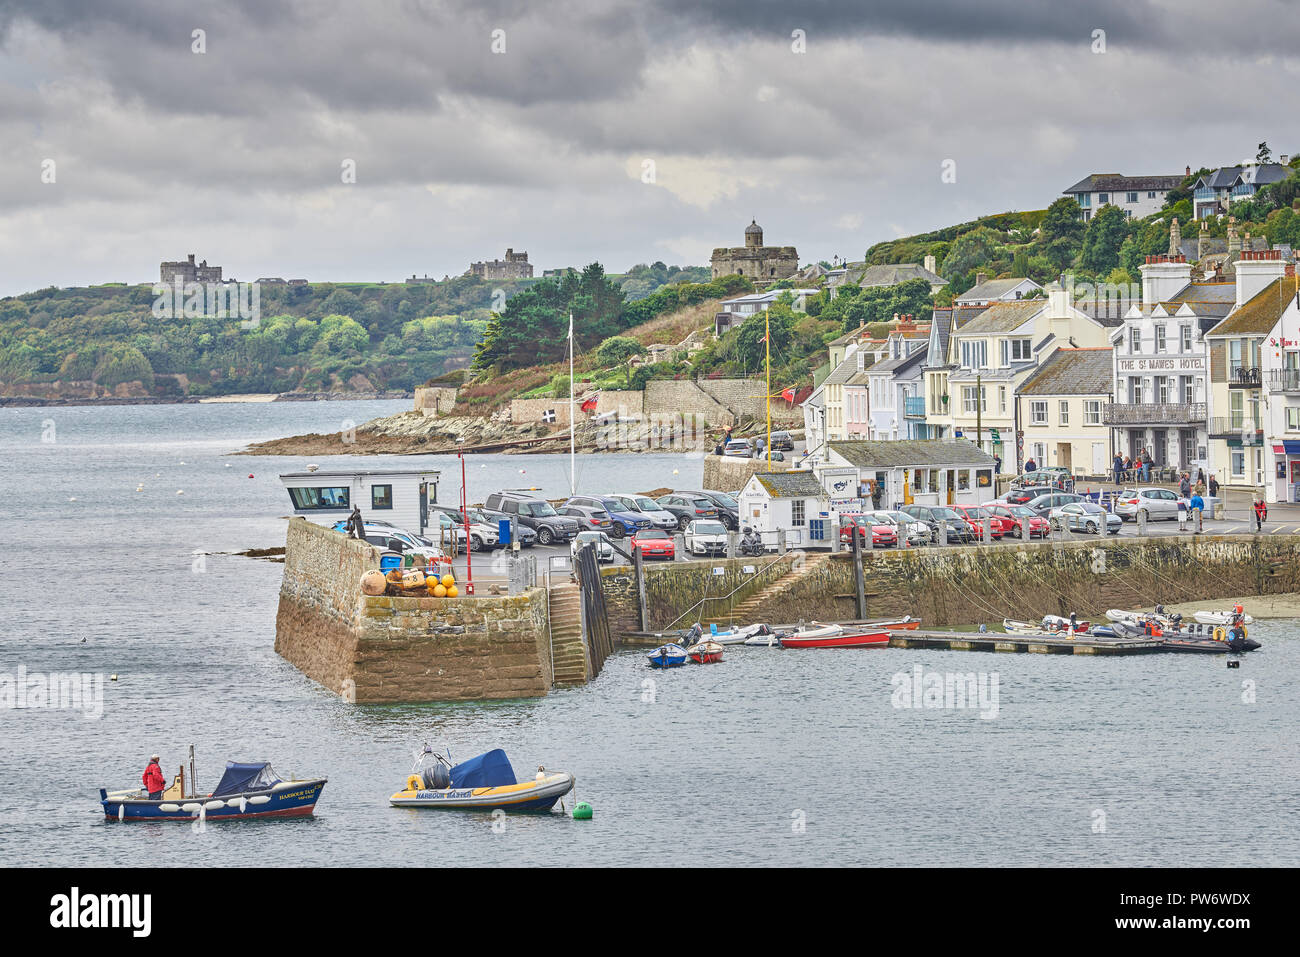 Hafen im Dorf St Mawes an einem regnerischen Tag, neben dem Englischen Kanal, Roseland Halbinsel, Cornwall, England. Stockfoto